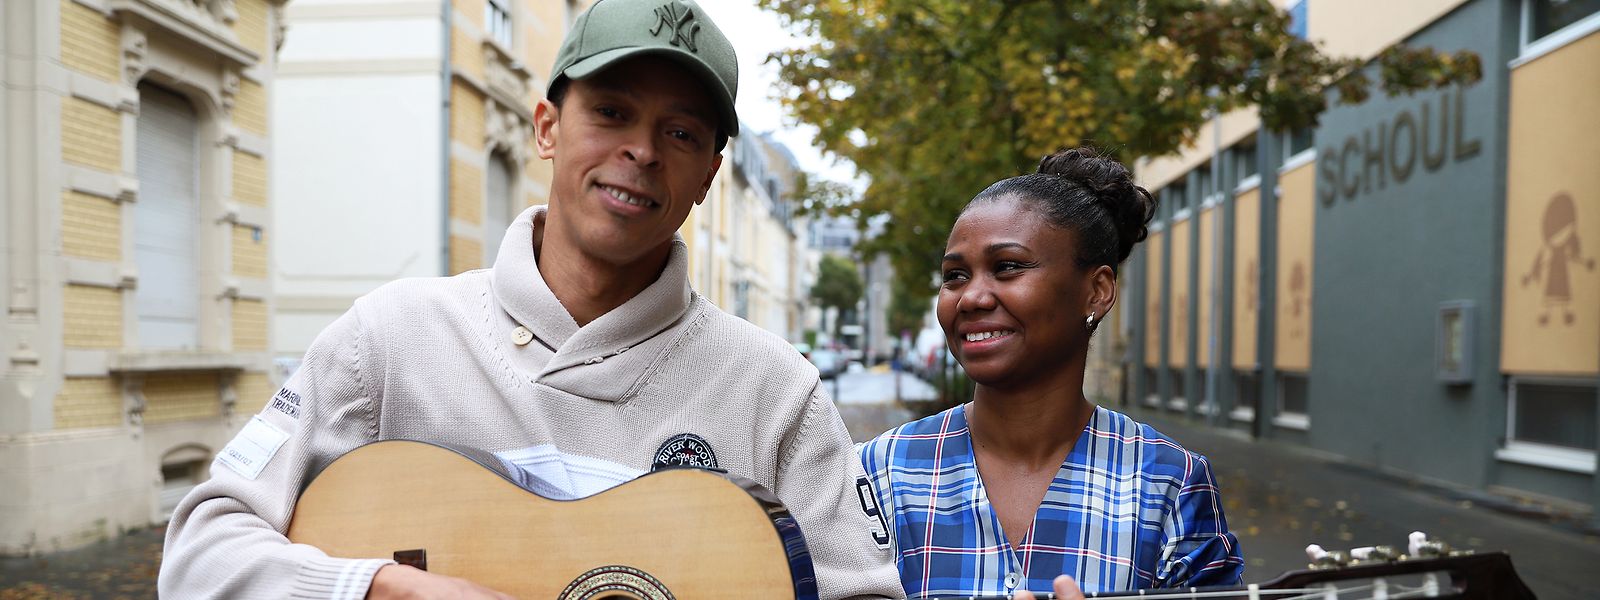 "Roda de Coladeira” é o projeto de Djamilo Gomes e Rosy Santos, criado para dar mais visibilidade aos músicos cabo-verdianos no Luxemburgo. Encerram o Festival das Migrações com um concerto às 17h, no domingo, no CEPA.